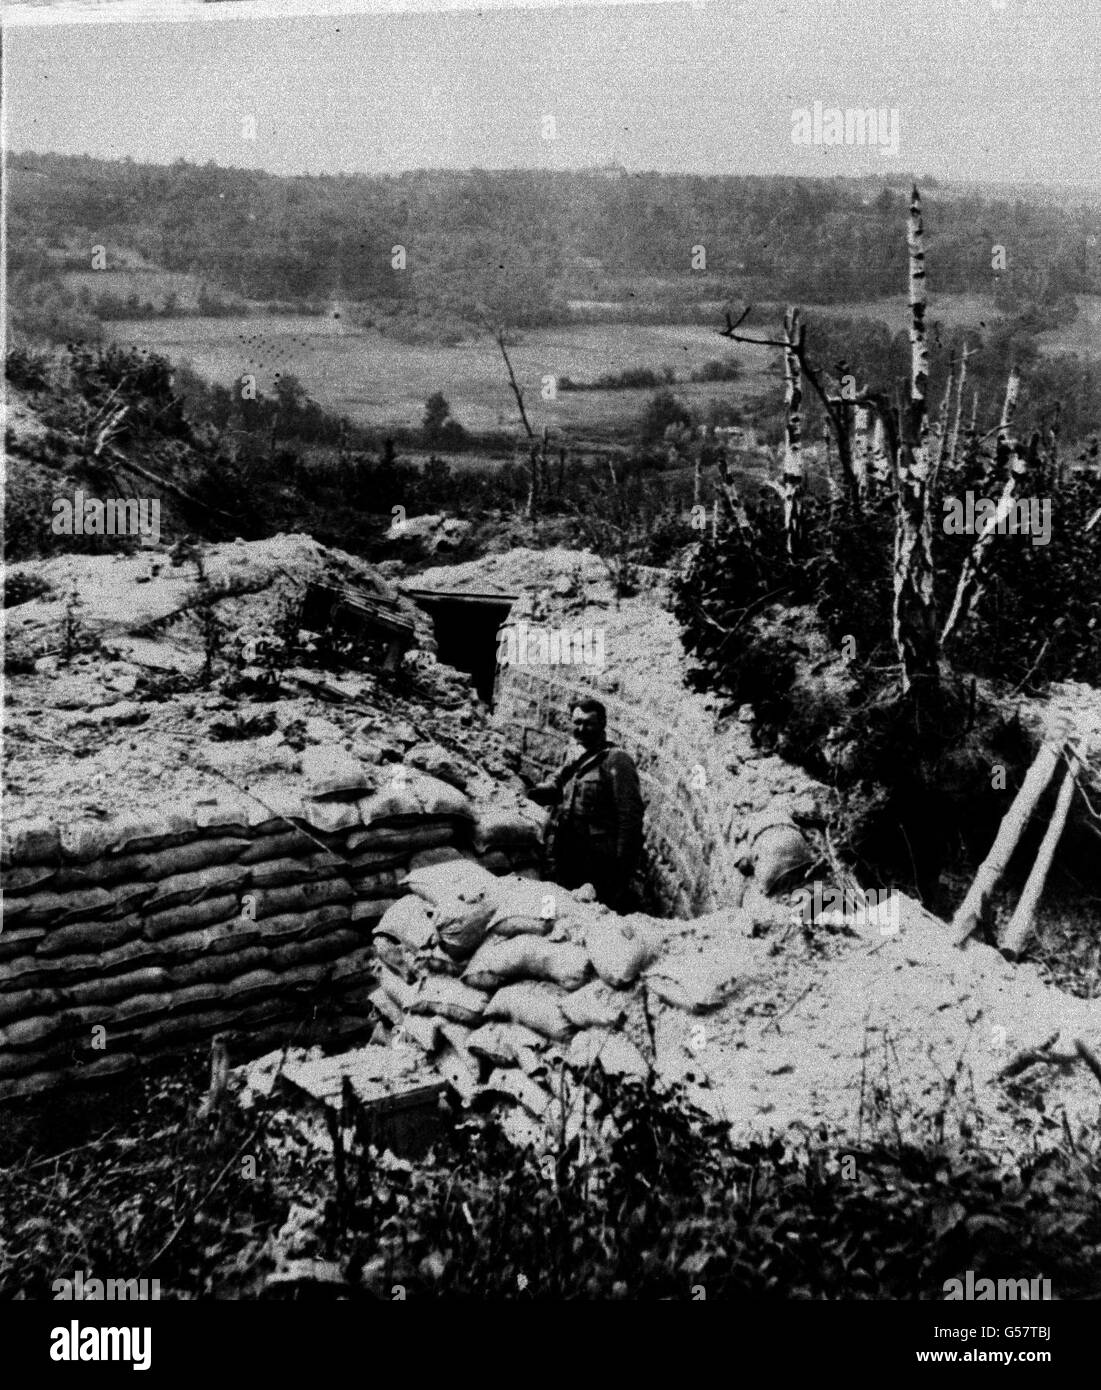 1918: Ein Soldat der amerikanischen Expeditionstruppe inspiziert einen fest konstruierten Graben, der von der deutschen Armee an der Westfront, wahrscheinlich in der Argonne in Frankreich, aufgegeben wurde. Bild Teil der PA Ersten Weltkrieg Sammlung. Stockfoto